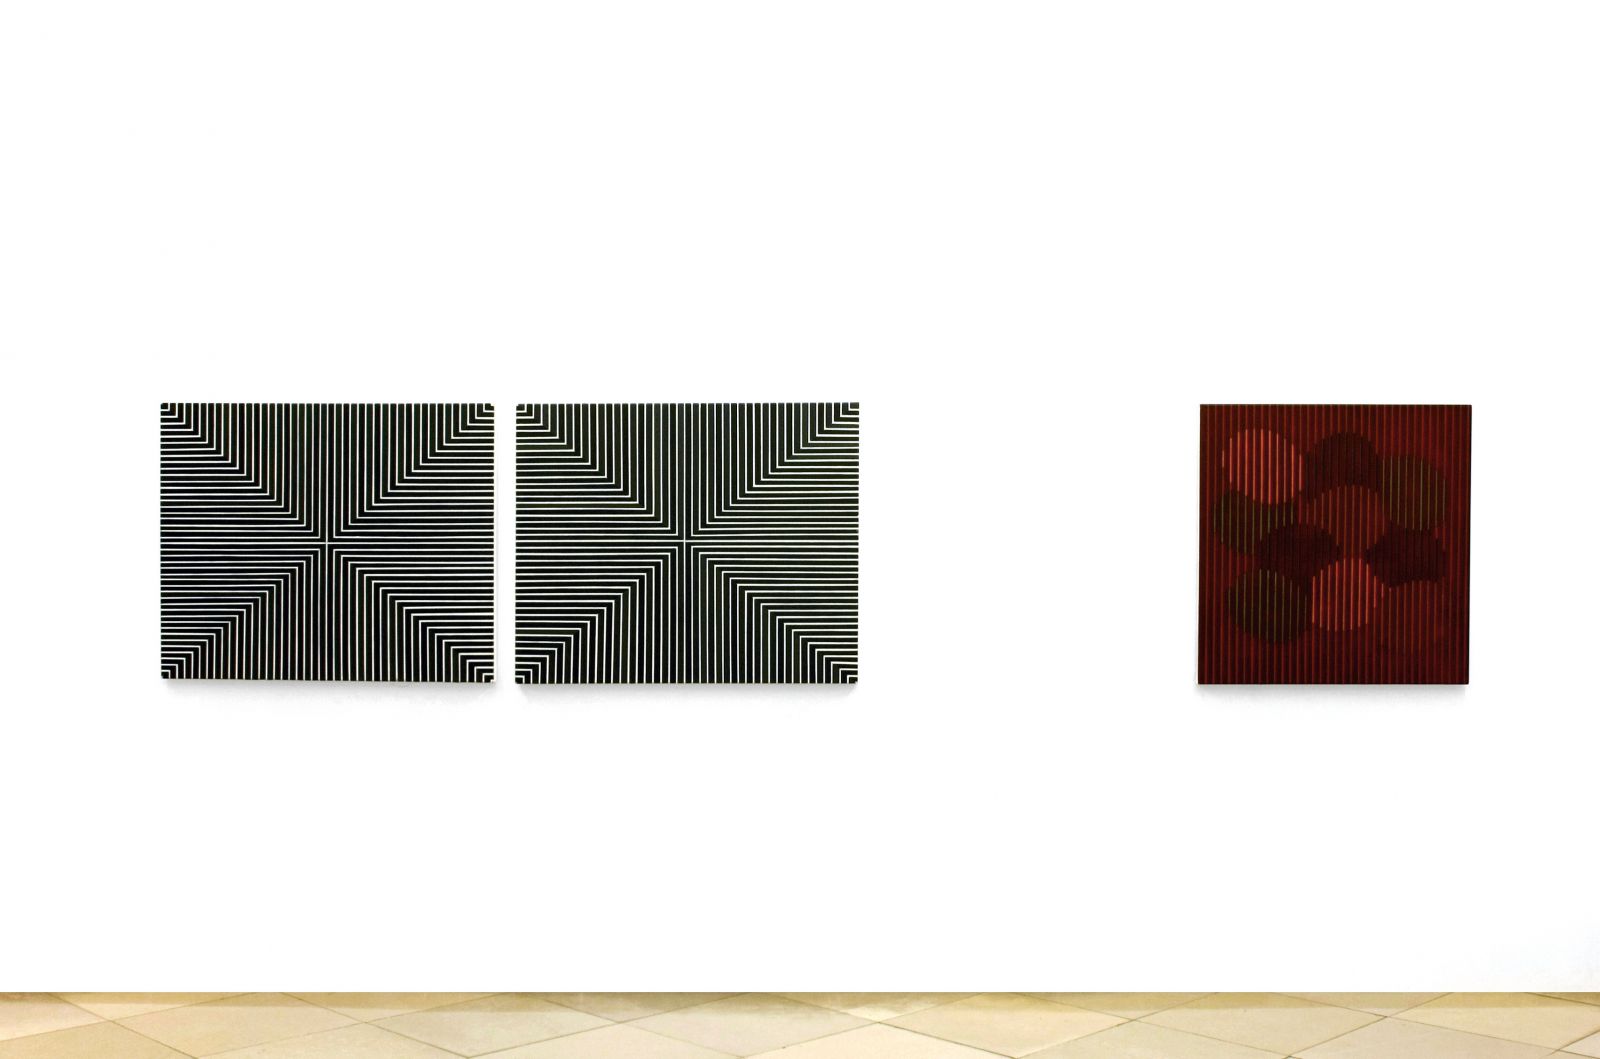 eder-minimalism, exhibition galerie artmark, vienna